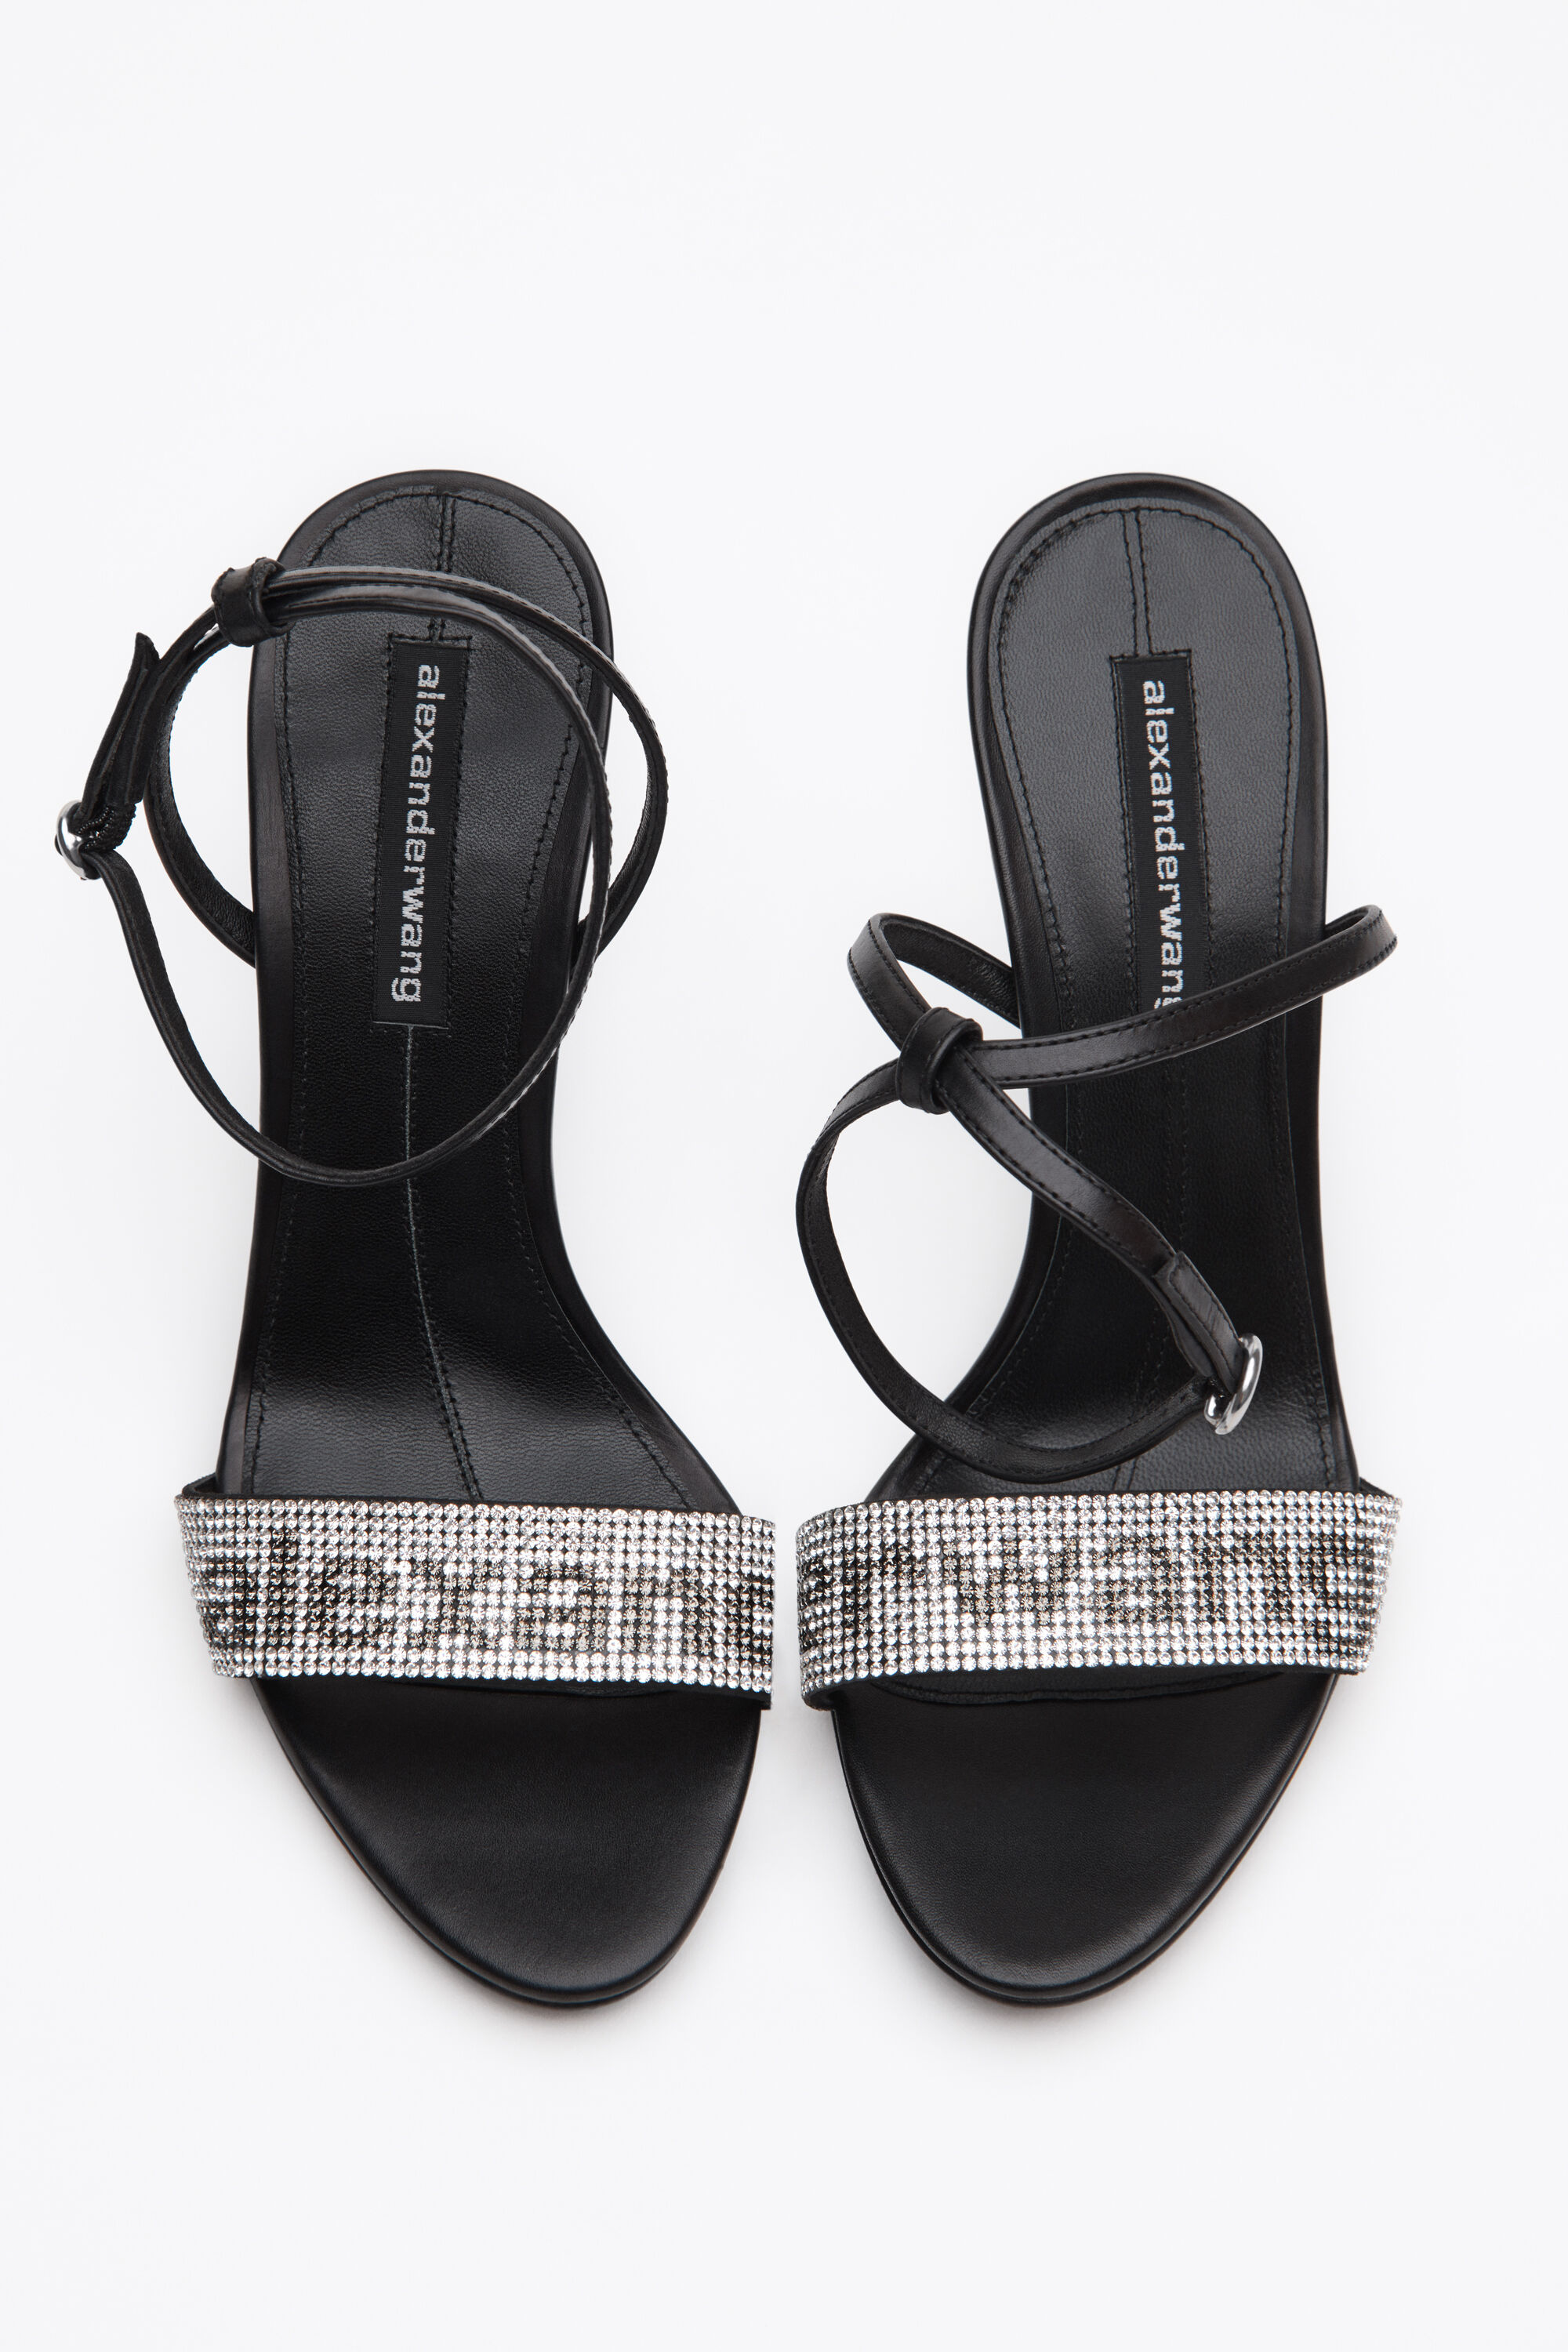 alexander wang flip flops